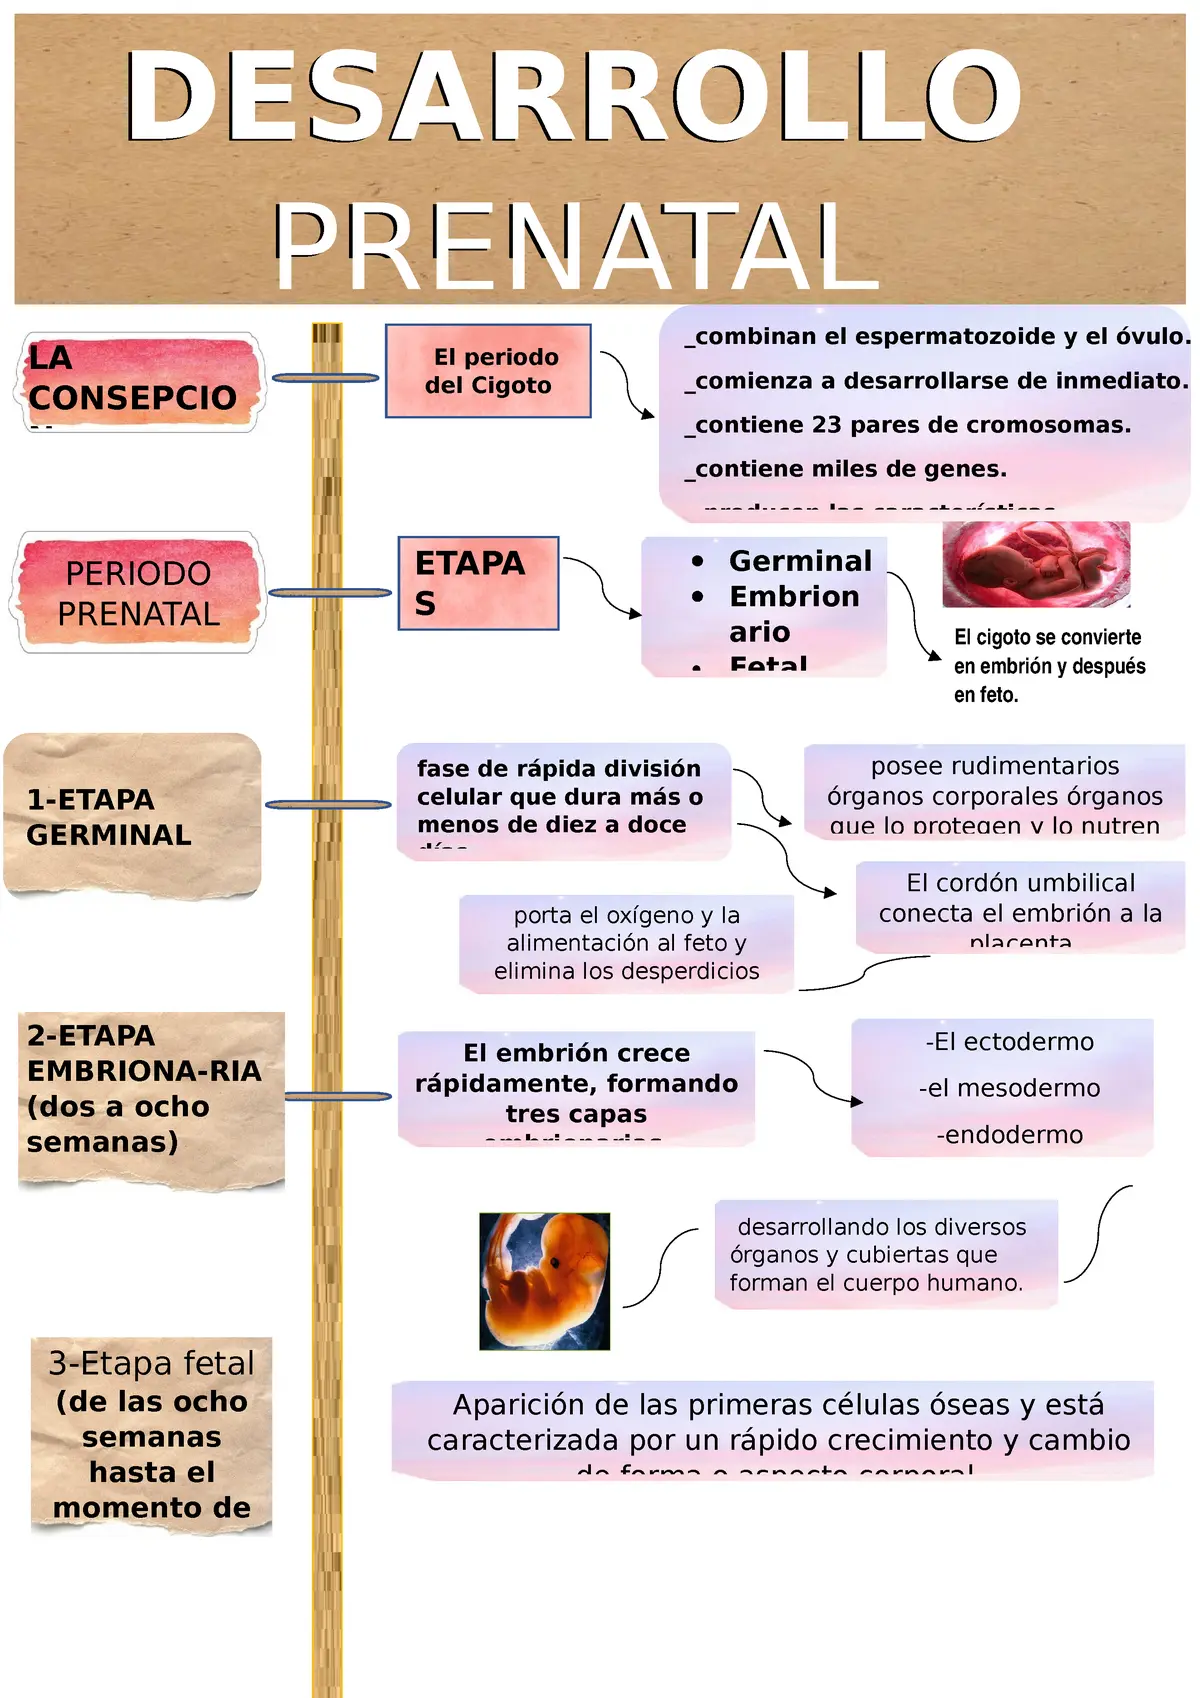 etapa prenatal caracteristicas psicologicas - Cómo es el comportamiento en la etapa prenatal